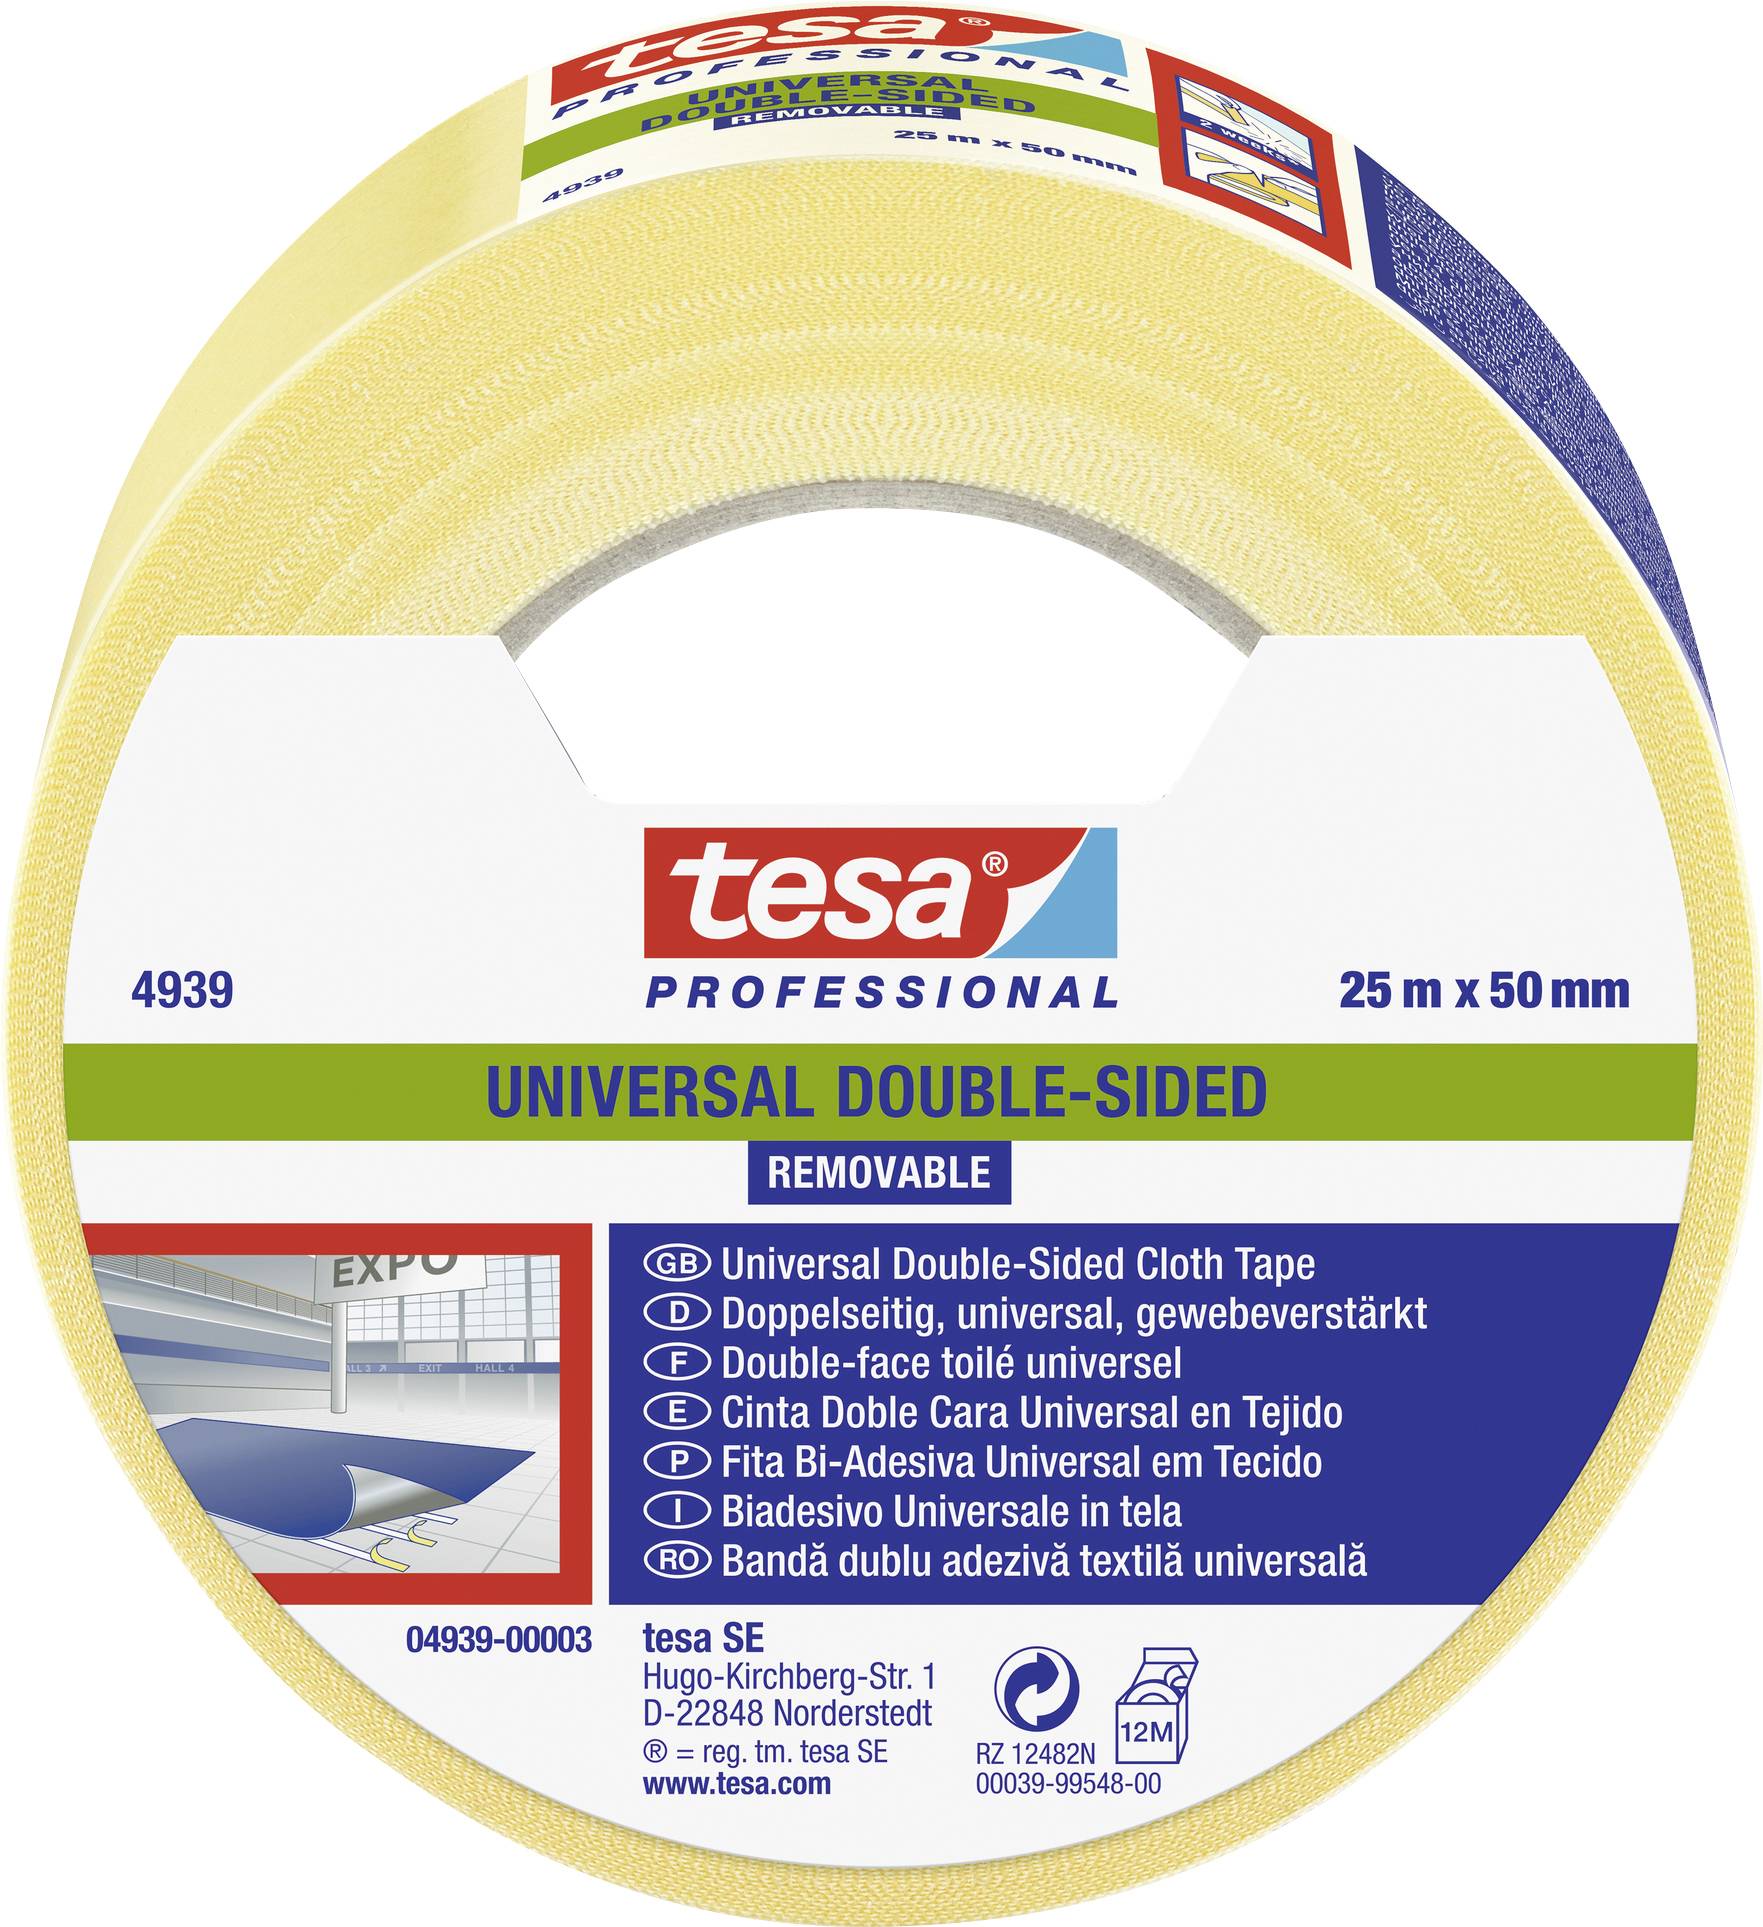 TESA 04939-00003-11 Verlegeband Weiß (L x B) 25.00 m x 50.00 mm 25 m (04939-00003-11)